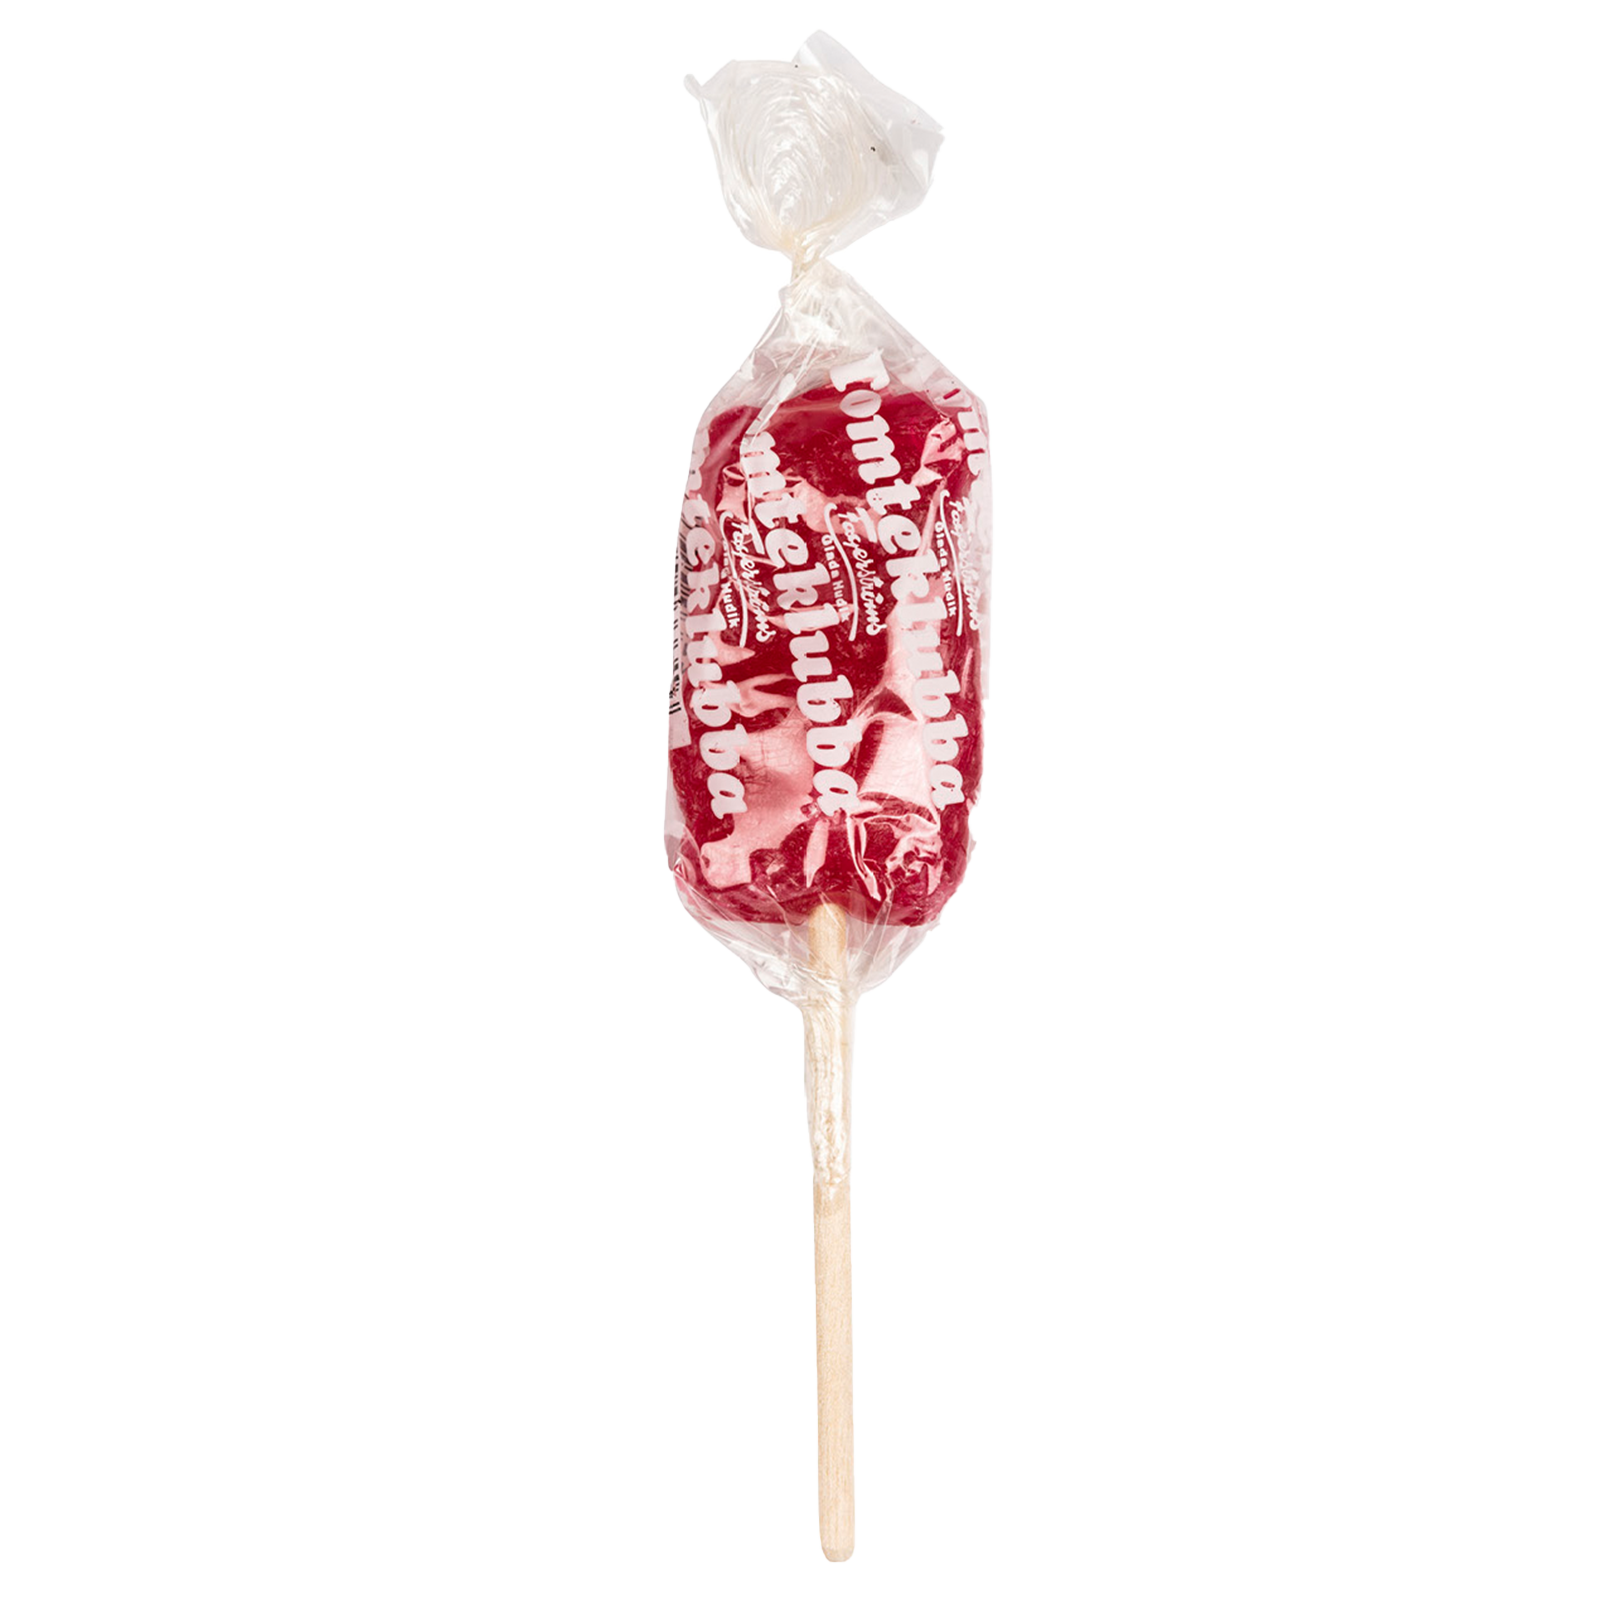 Red Lollipop